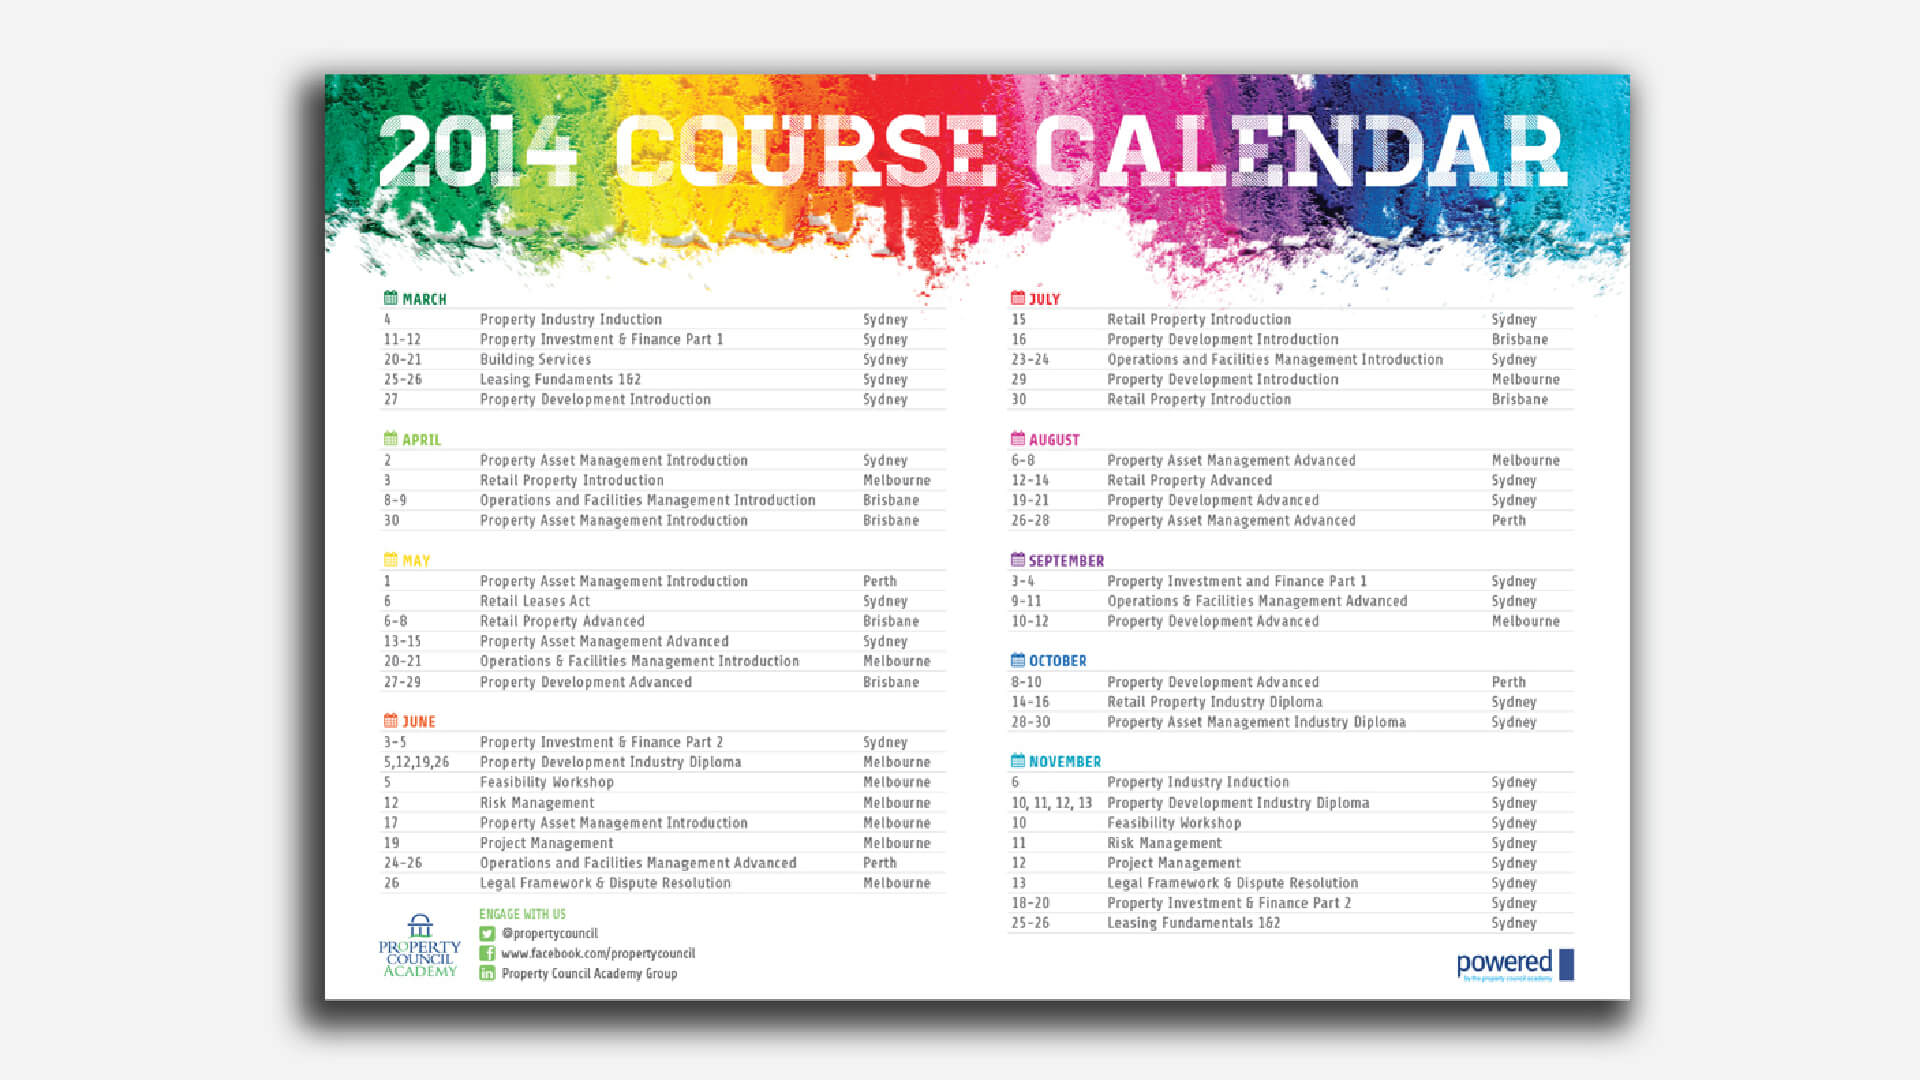 Property Council Academy 2014 Courses Collateral course calendar